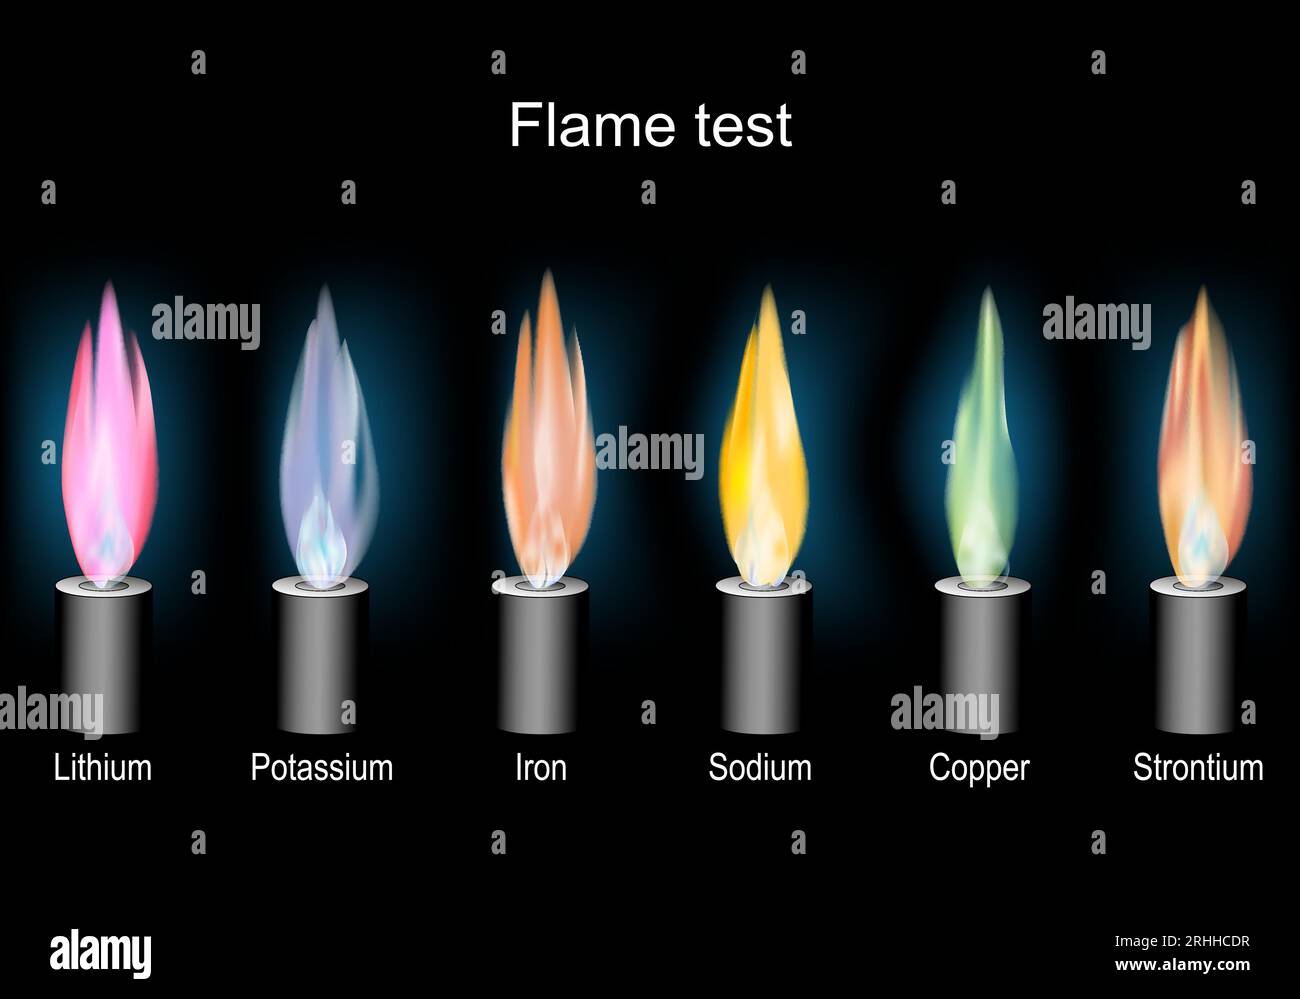 prova di fiamma. esperimento scientifico. Illustrazione vettoriale realistica. Bruciatori Bunsen con fiamma di colore su sfondo scuro. Illustrazione Vettoriale